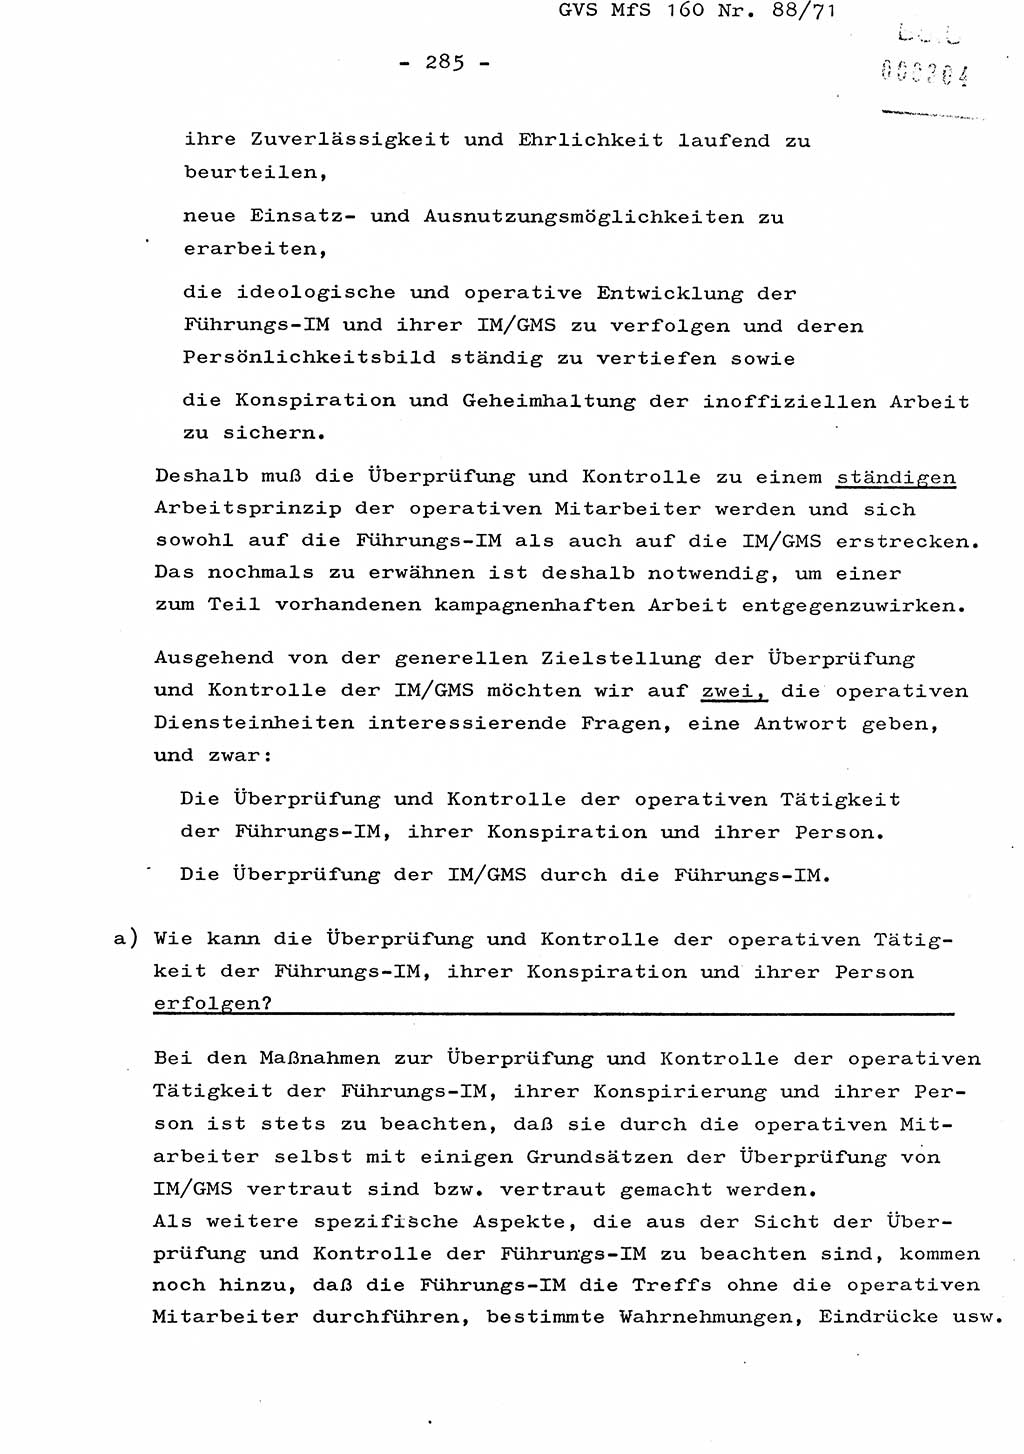 Dissertation Oberstleutnant Josef Schwarz (BV Schwerin), Major Fritz Amm (JHS), Hauptmann Peter Gräßler (JHS), Ministerium für Staatssicherheit (MfS) [Deutsche Demokratische Republik (DDR)], Juristische Hochschule (JHS), Geheime Verschlußsache (GVS) 160-88/71, Potsdam 1972, Seite 285 (Diss. MfS DDR JHS GVS 160-88/71 1972, S. 285)